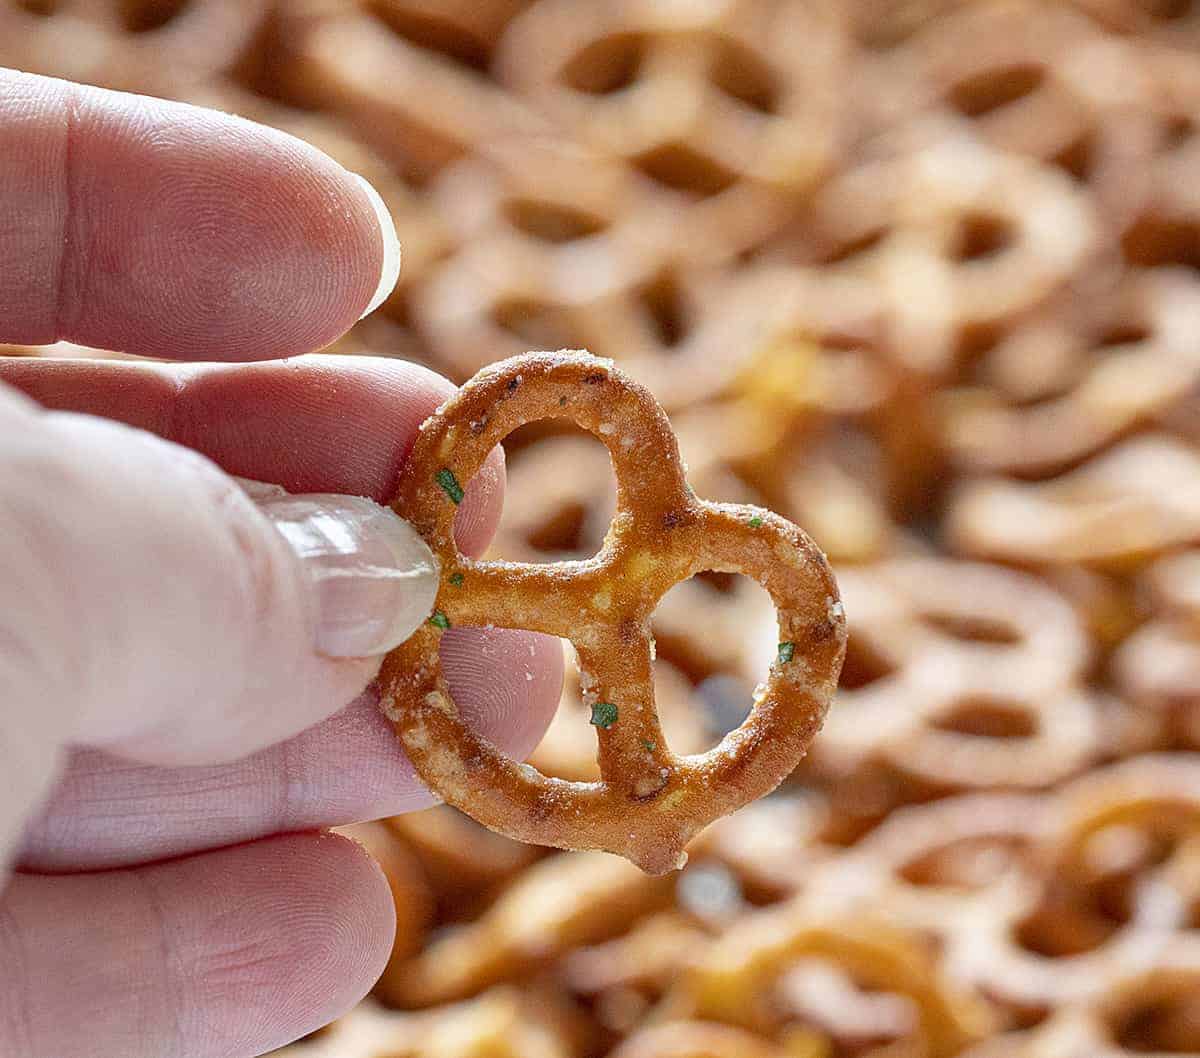 https://iambaker.net/wp-content/uploads/2019/07/seasoned-pretzels-4-blog.jpg